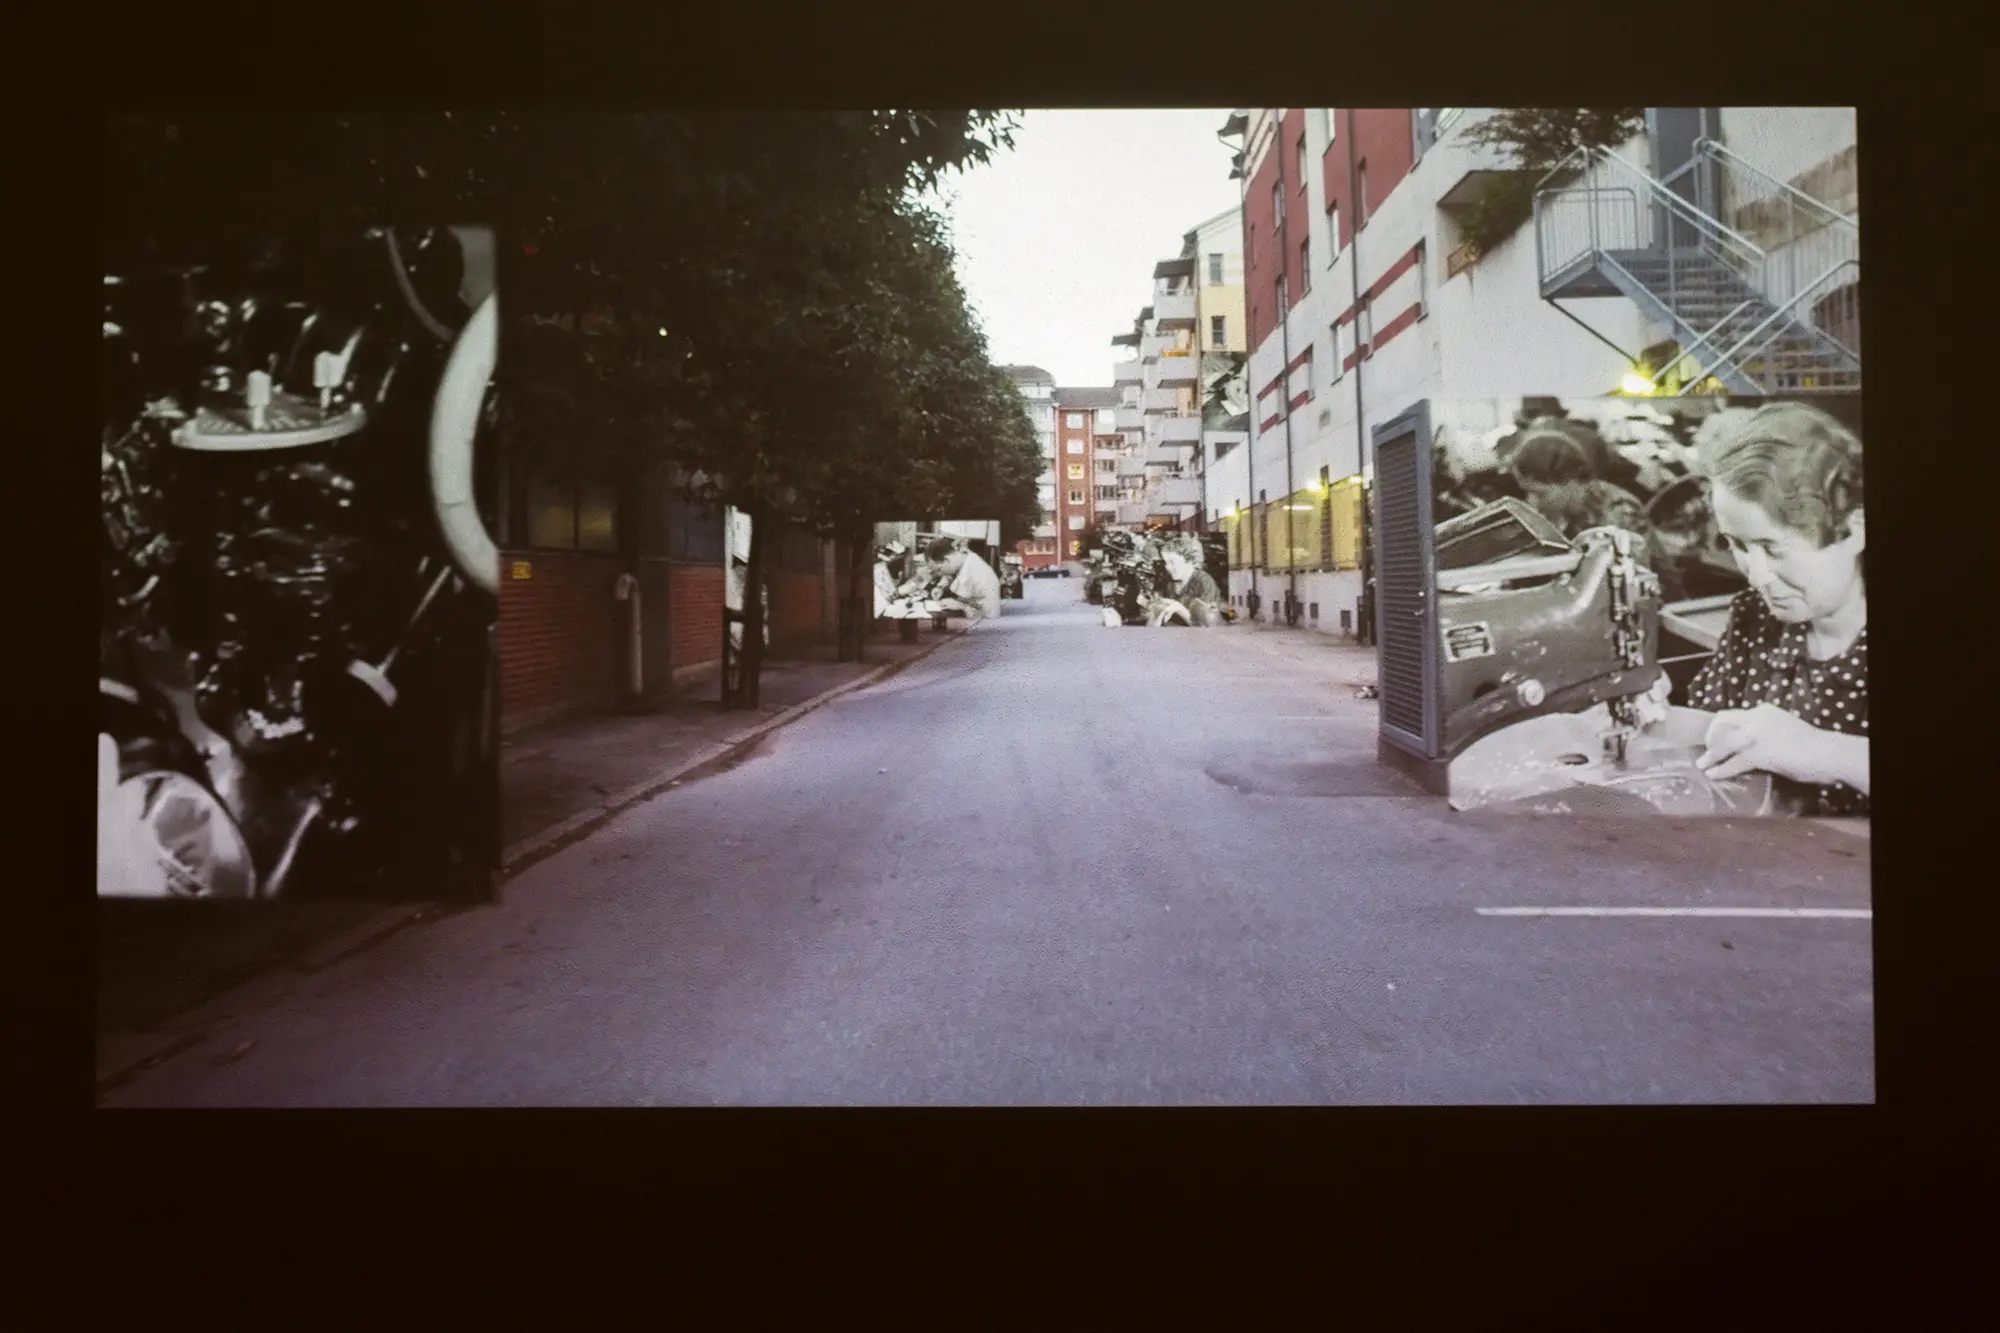 På en video syns en lång gata med träd och flervåningshus. Fyra mindre svartvita bilder på gammeldags arbetsmiljöer är inklippta i bilden.